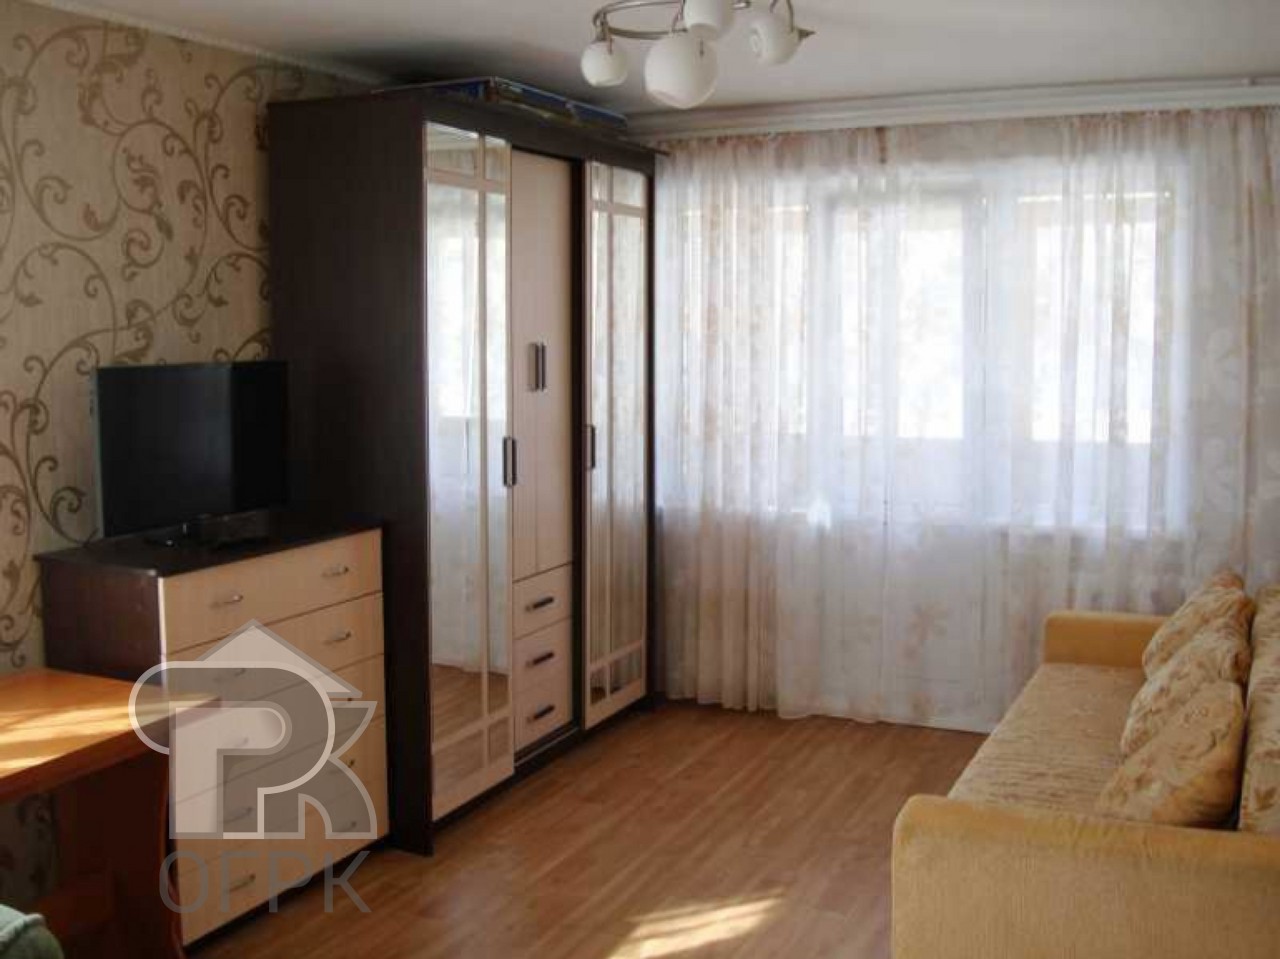 Однокомнатная квартира в саратове купить недорого. Шибанкова 2 Наро-Фоминск. Комната обычная. Квартира обычная. Фото обычных квартир.